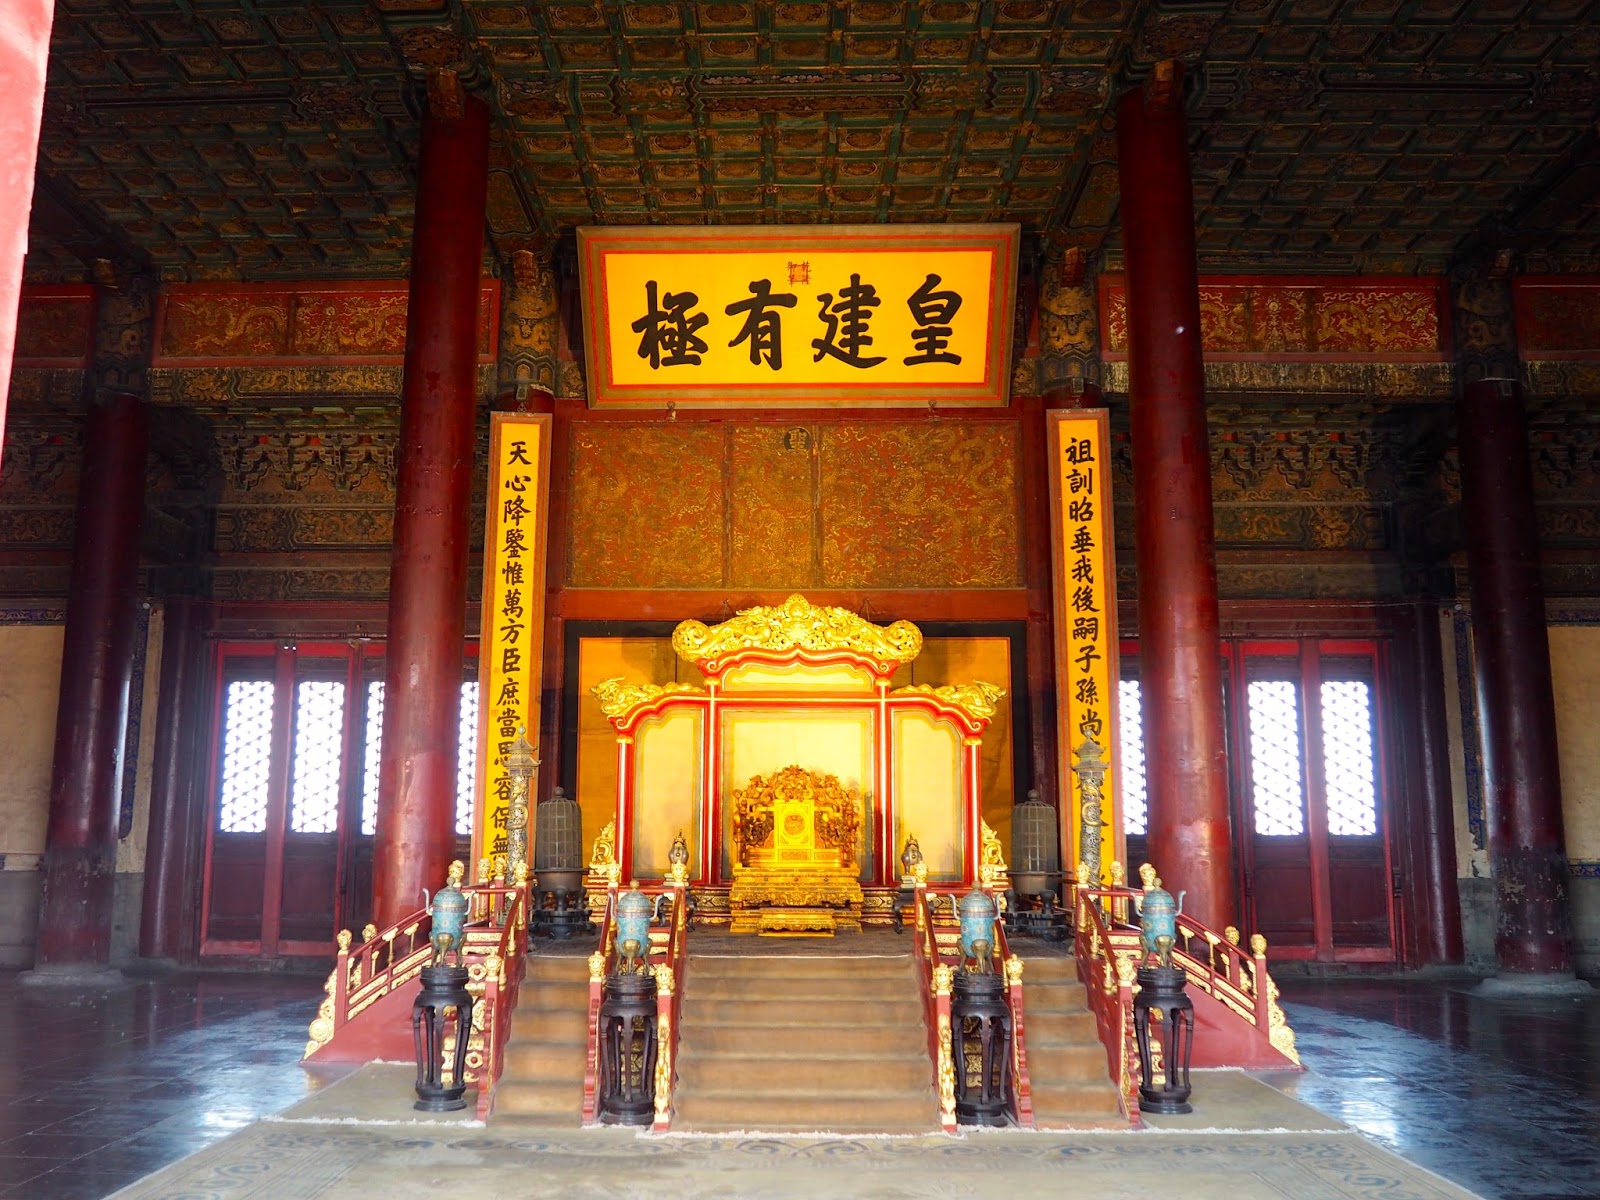 Сокровища императора в каком городе китая снимали